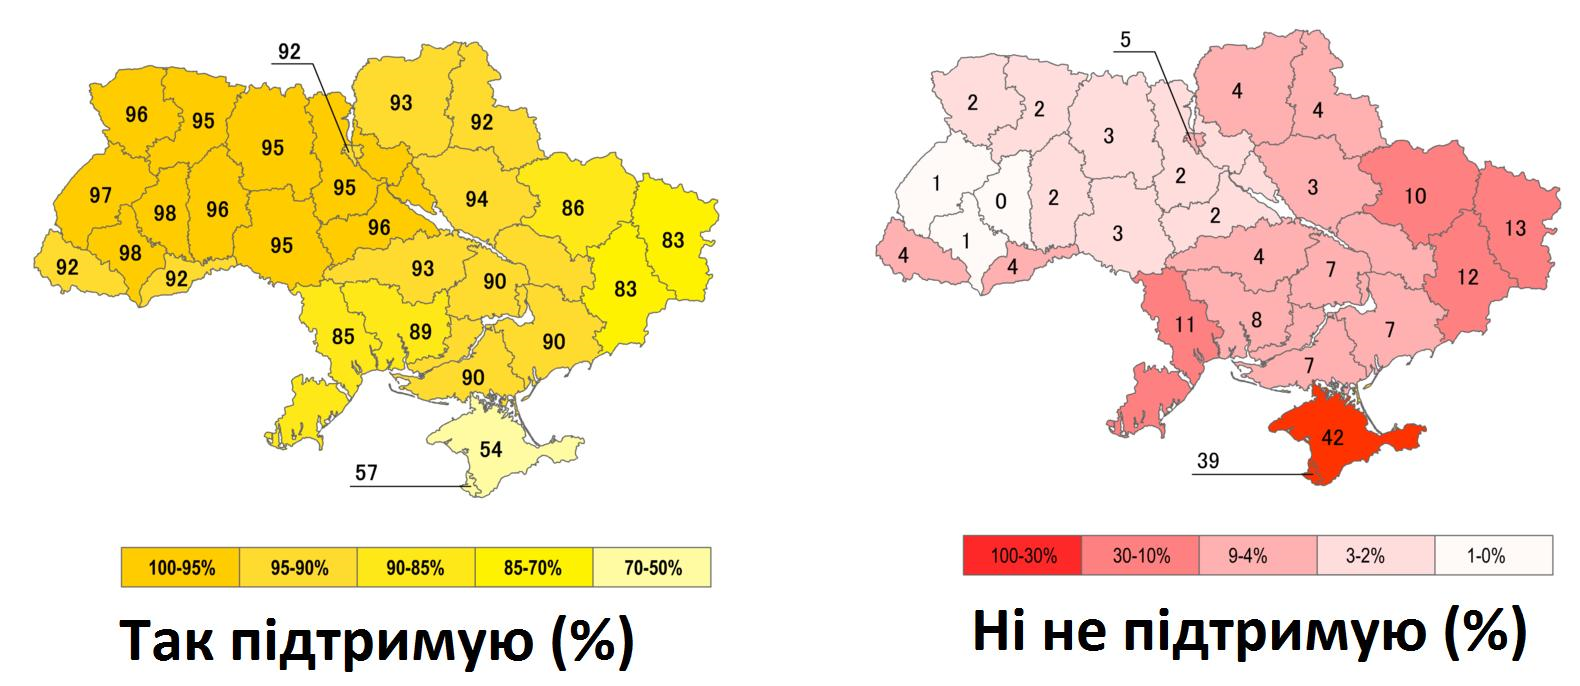 Какие были границы украины в 1991 году. Карта Украины референдум 1991. Всеукраинский референдум (1991)независимость Украины. Карта Украины 1991 года. Карта референдума 1991 года на Украине.